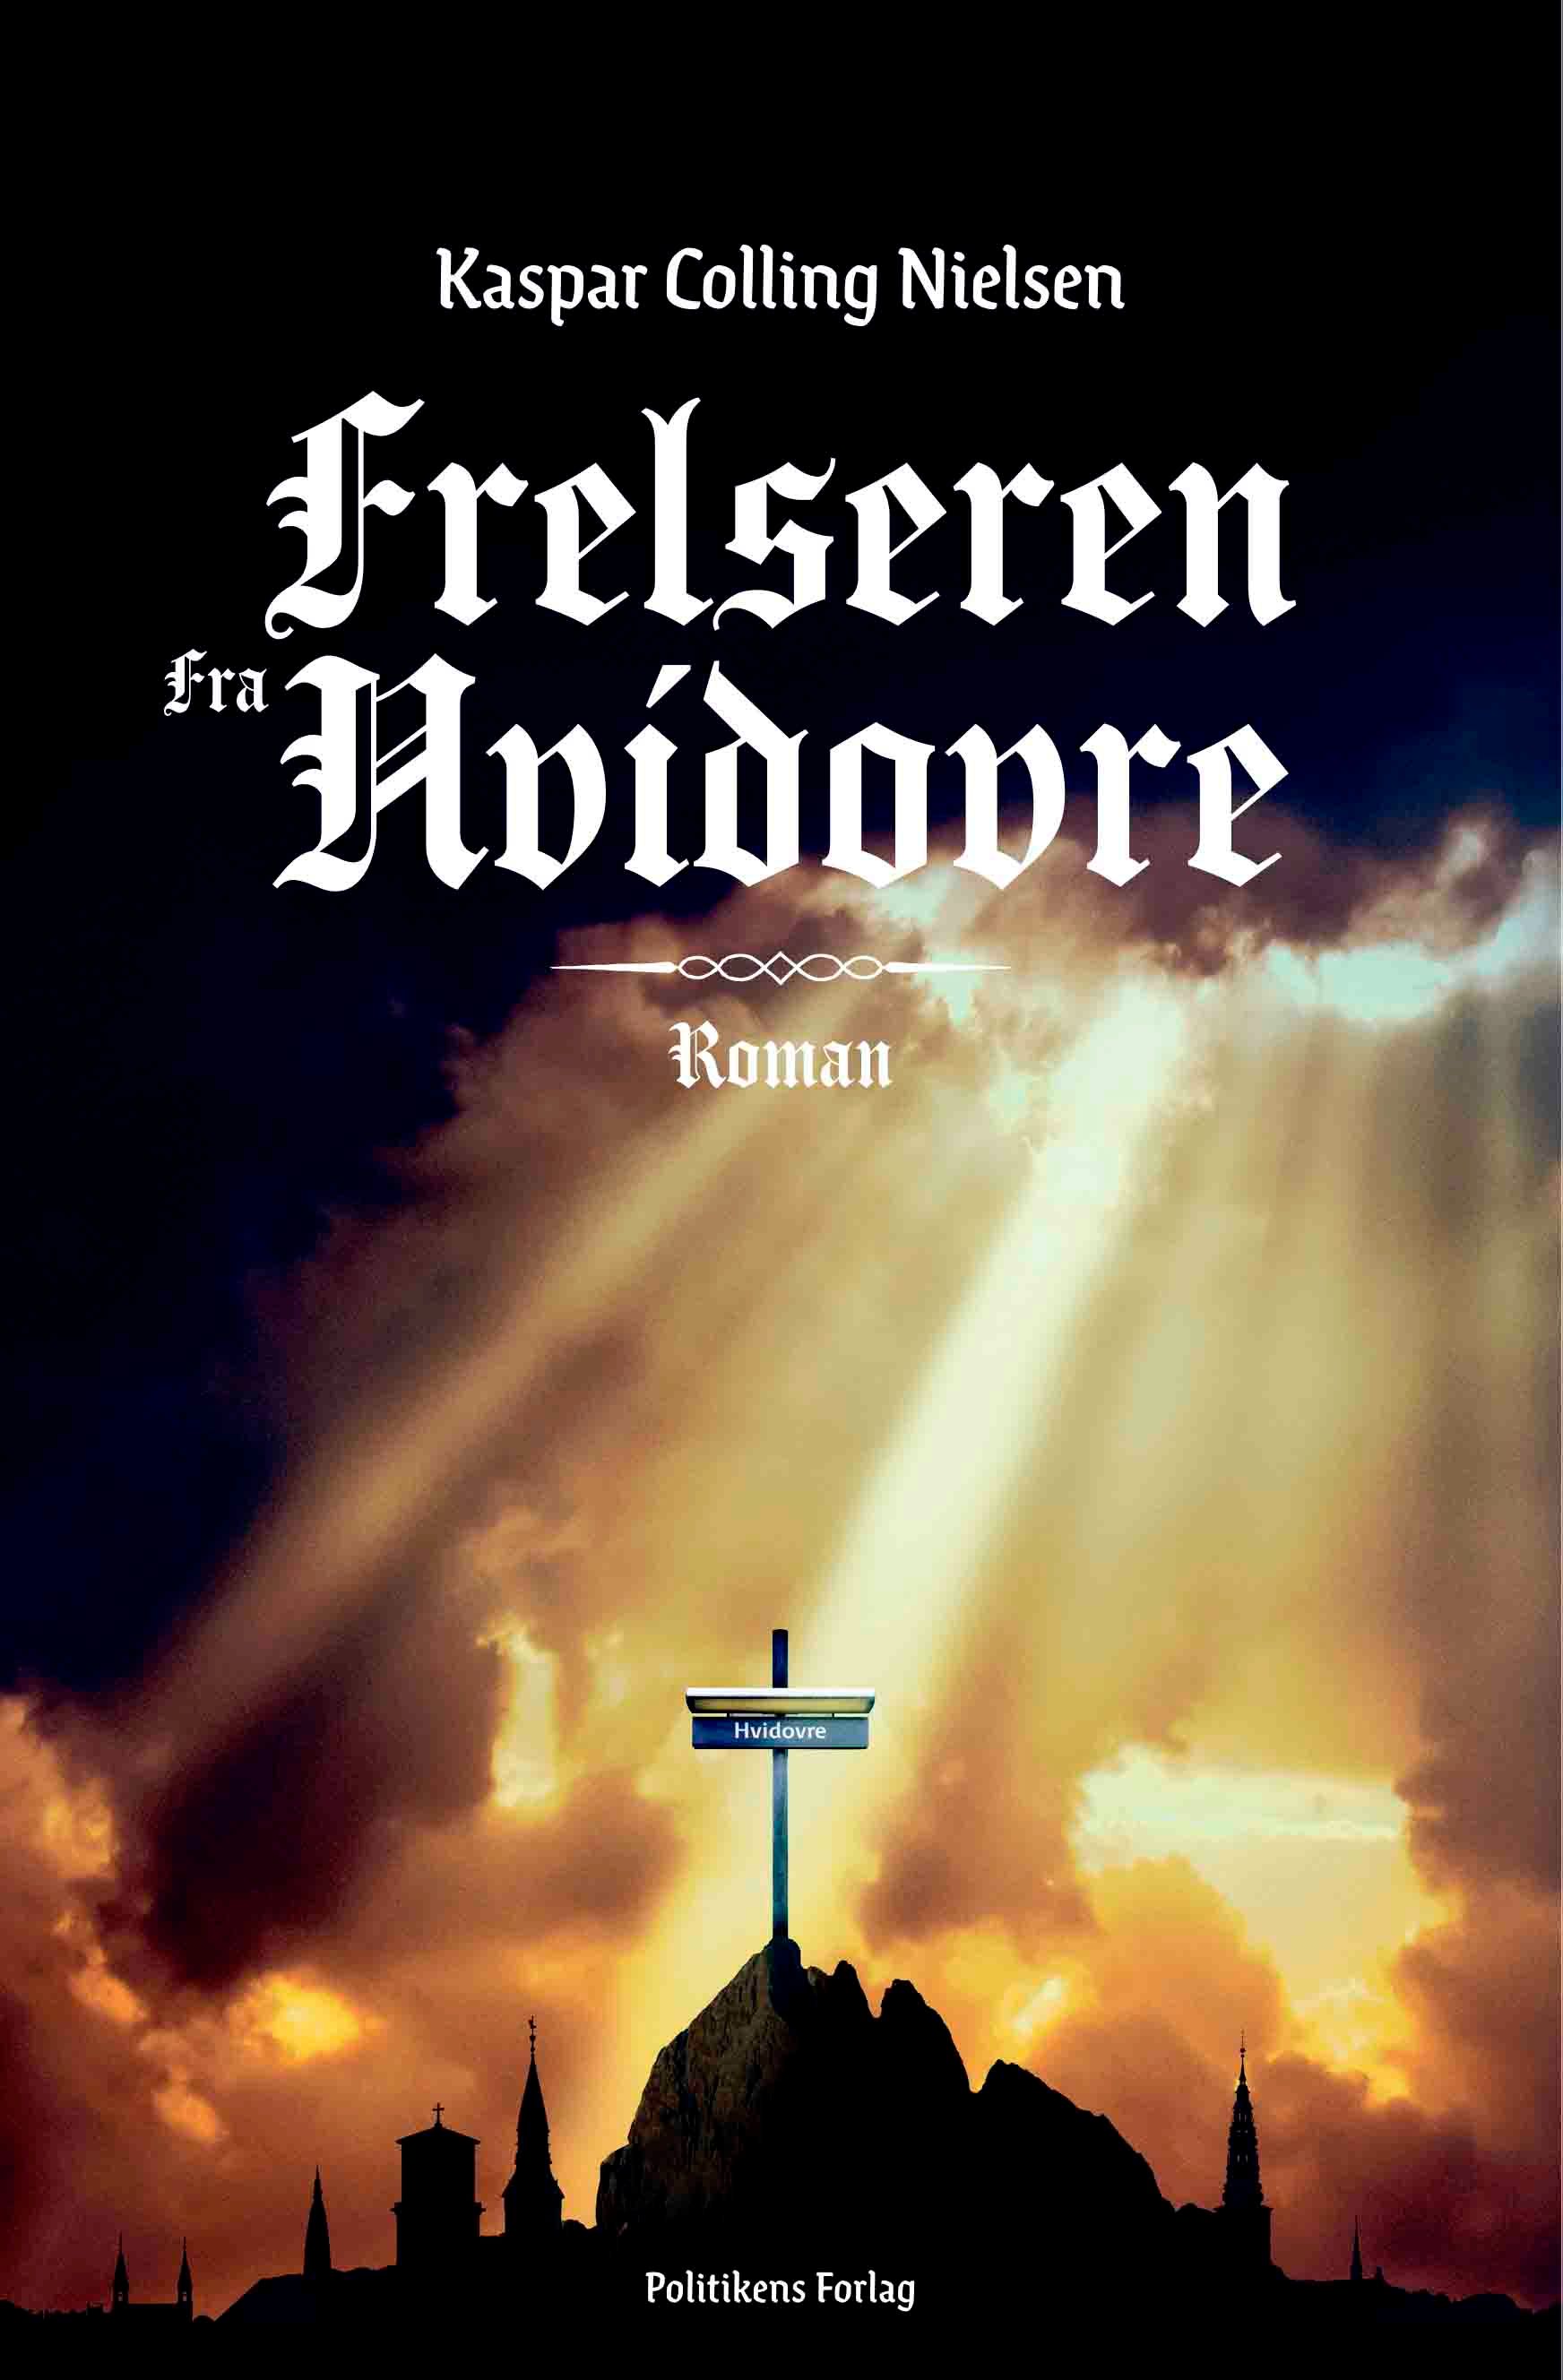 Frelseren fra Hvidovre, eBook by Kaspar Colling Nielsen